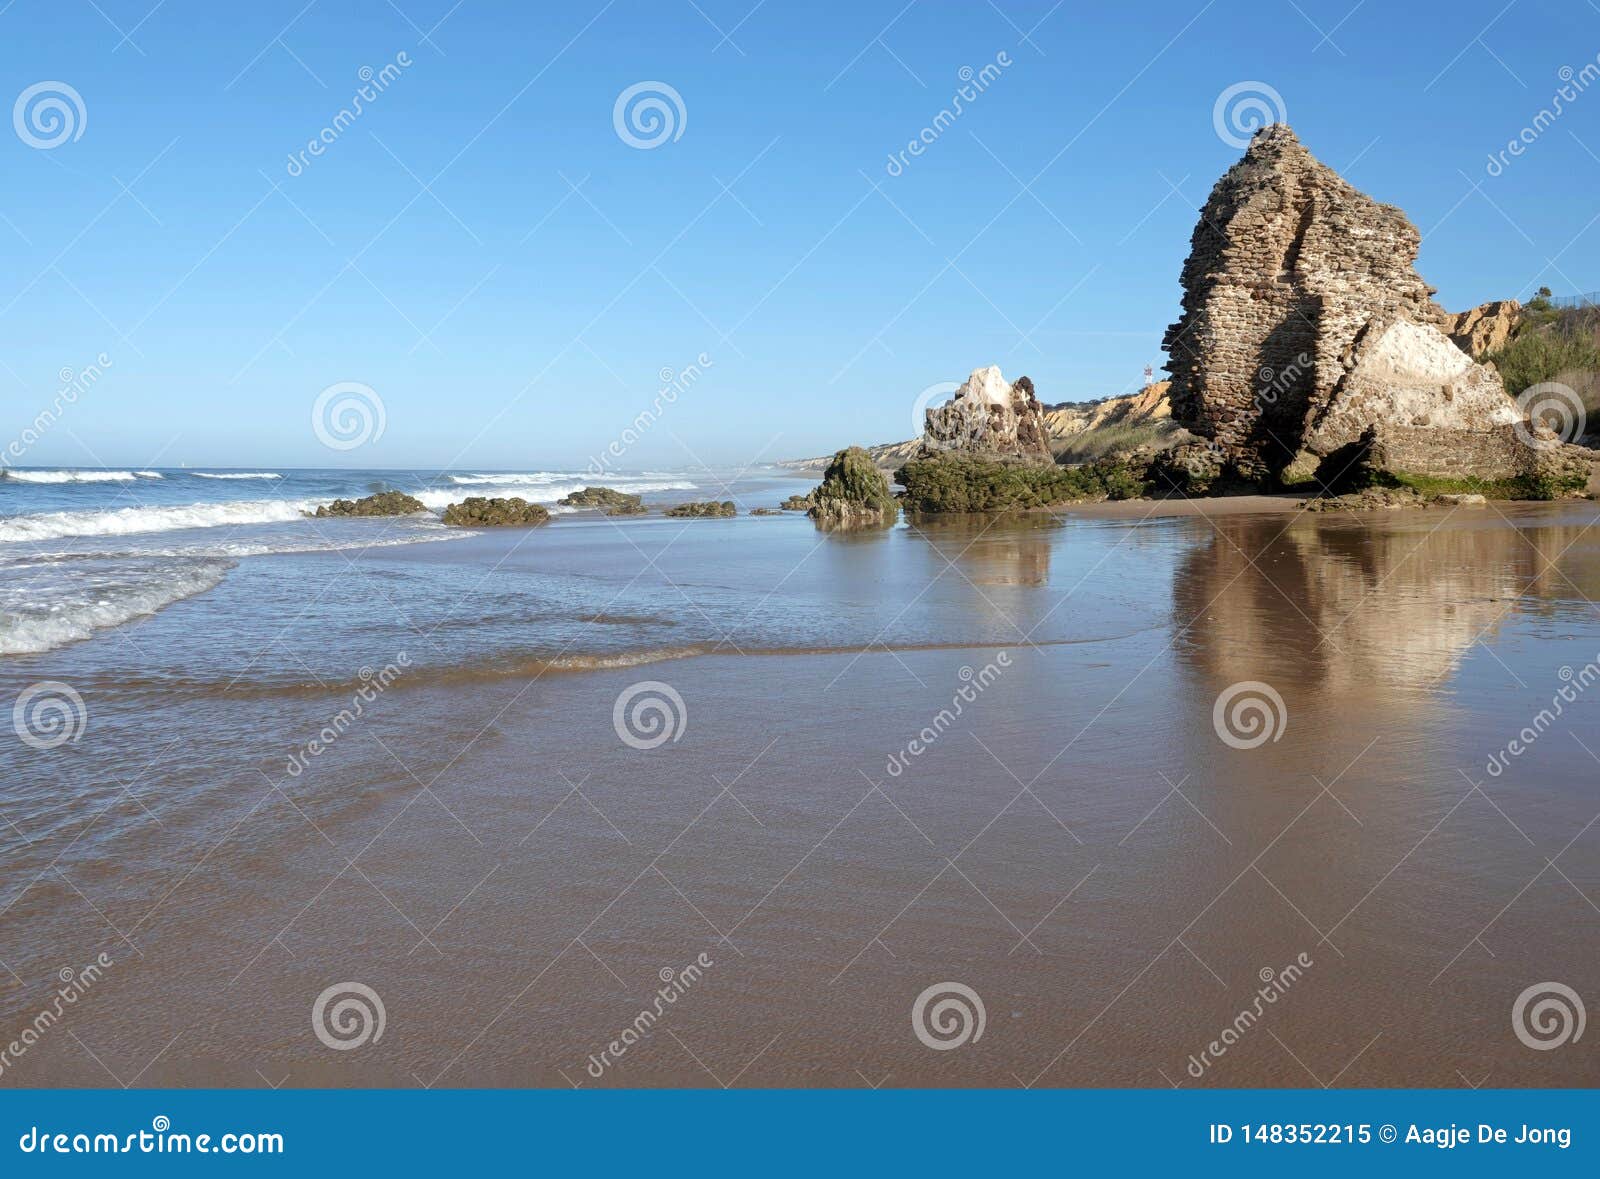 torre del loro mazagon ruins at playa de rompeculos beach in mazagon, spain